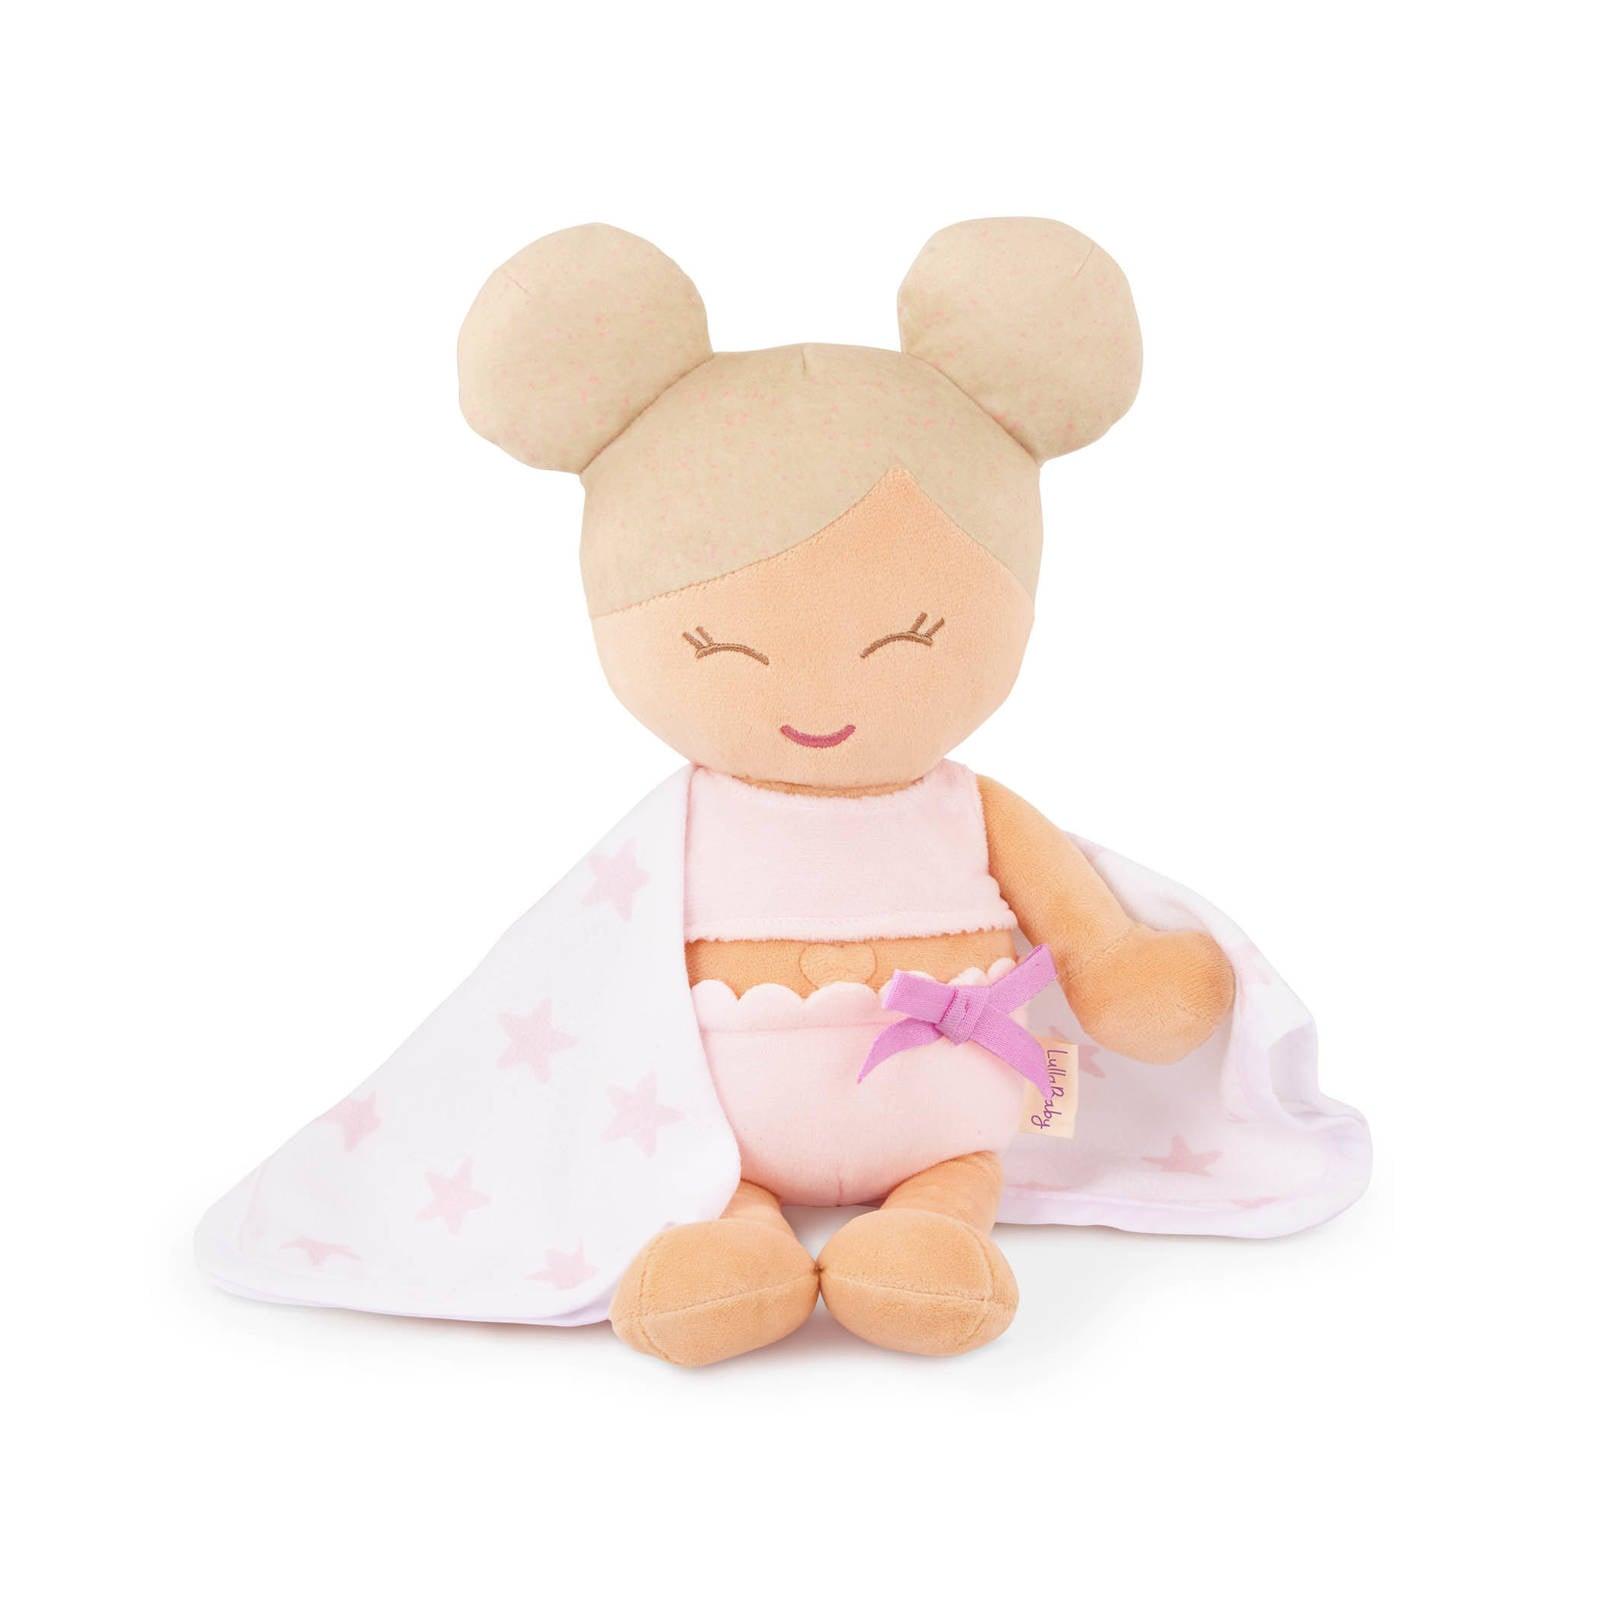 LullaBaby: lalka przytulanka do kąpieli Bath Doll Babi - Noski Noski